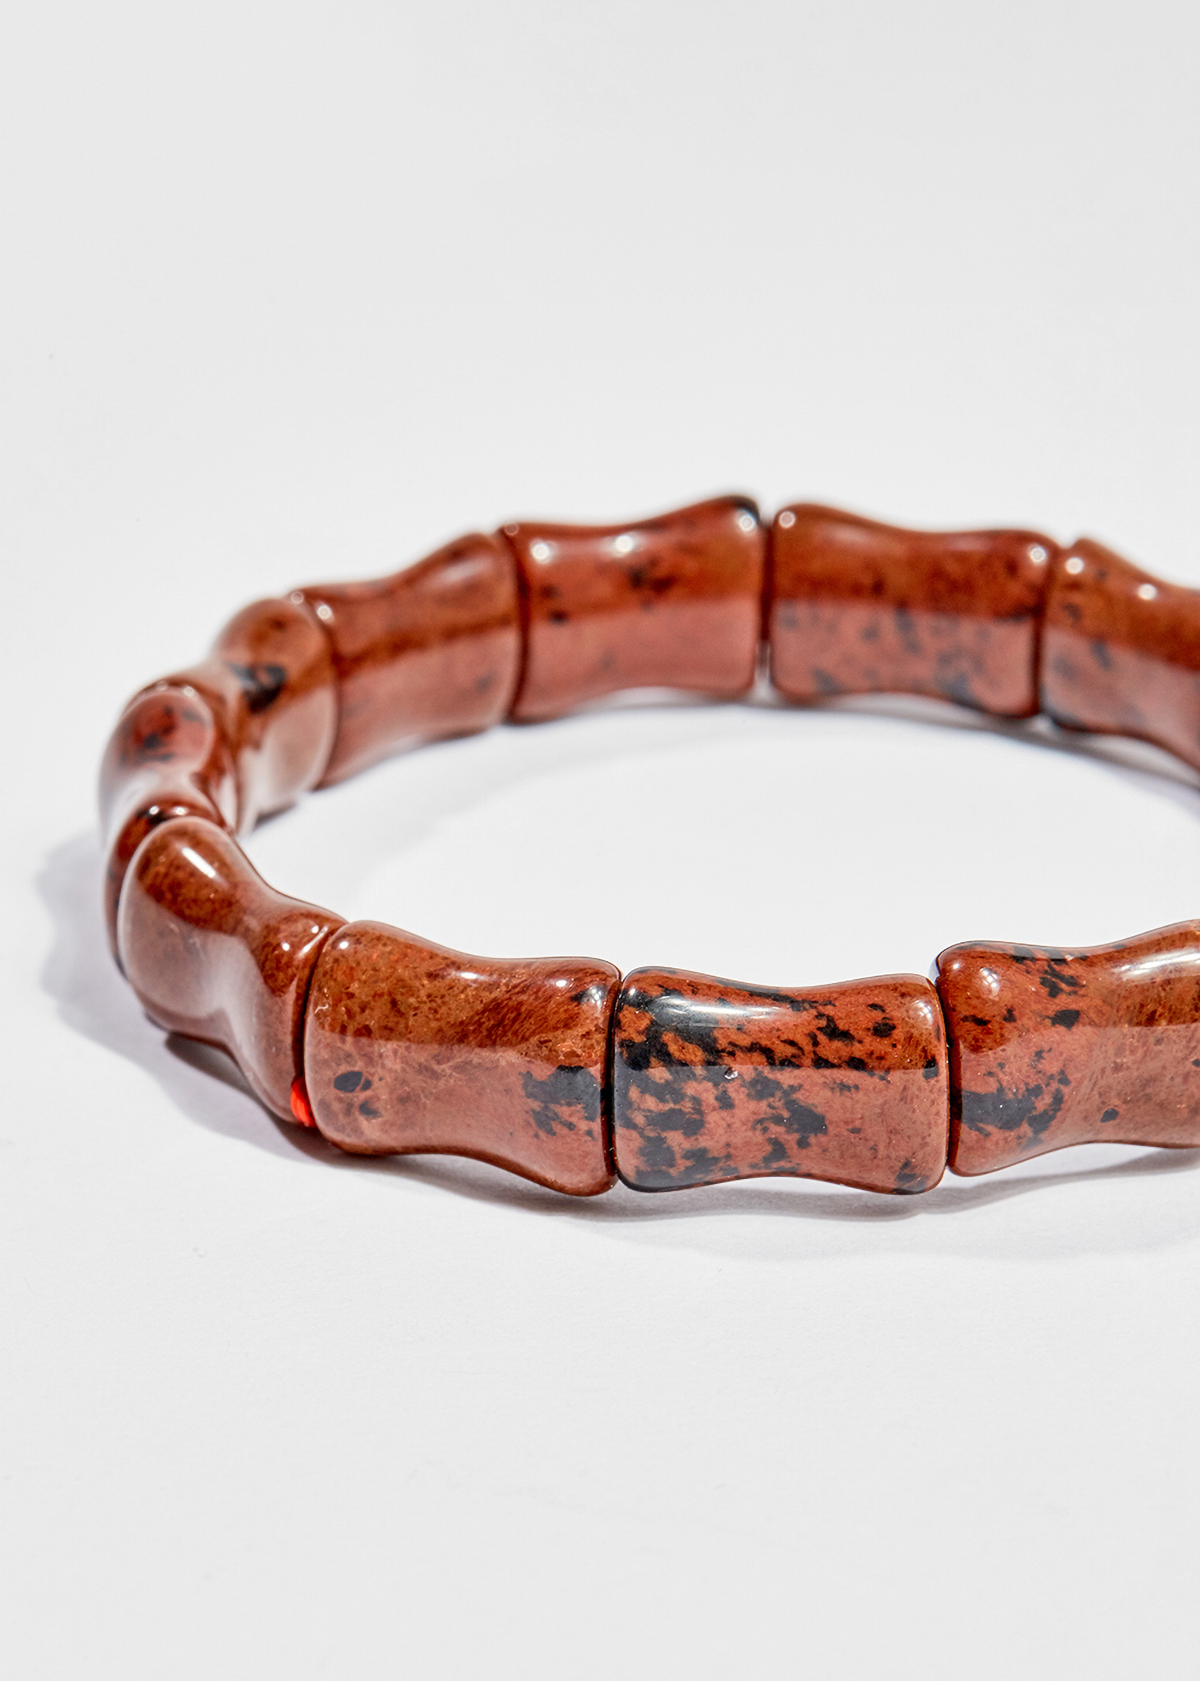 Vòng tay phong thủy đốt trúc đá chalcedony nâu đỏ 16x12mm mệnh hỏa , thổ - Ngọc Quý Gemstones